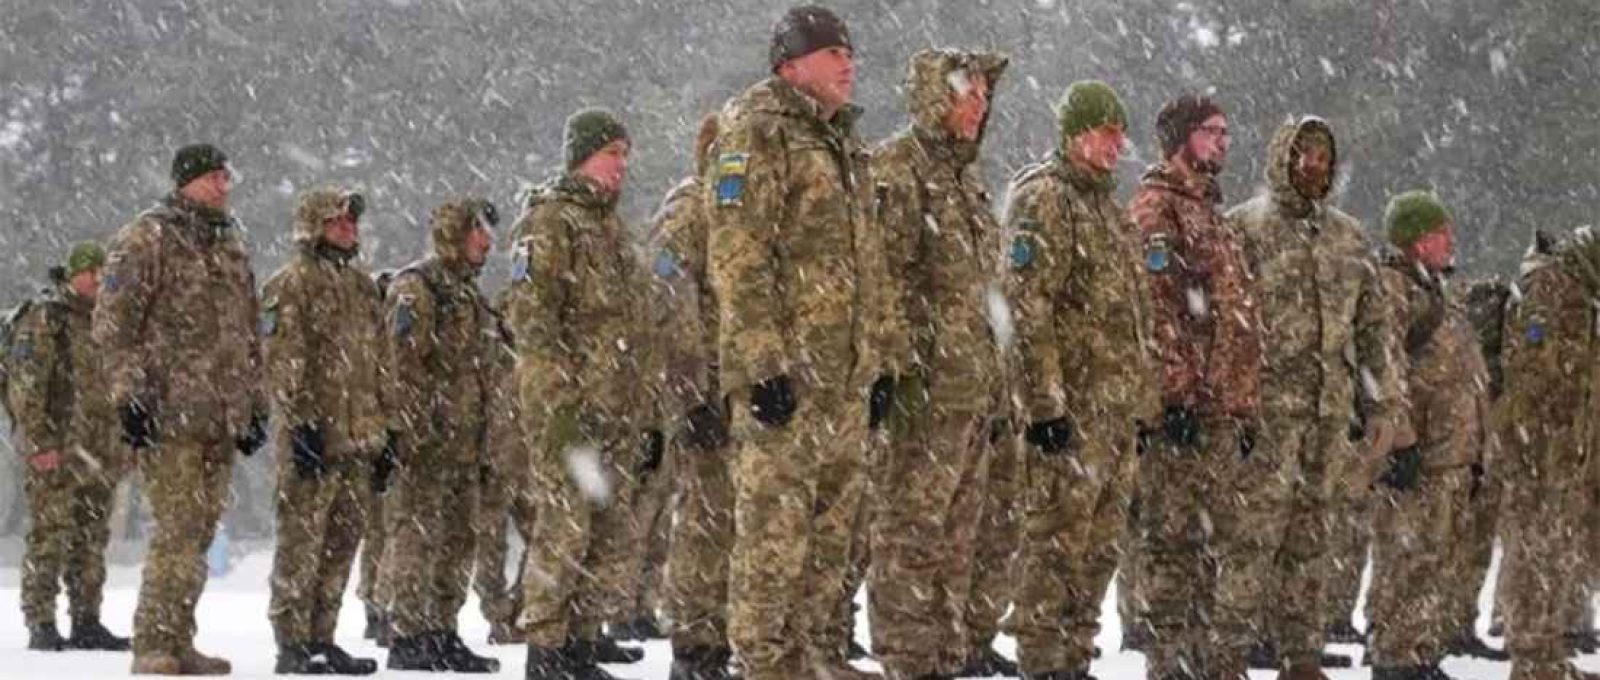 Soldados do exército ucraniano em Kharkov, Ucrânia, em janeiro de 2022 (Seneline/Shutterstock).